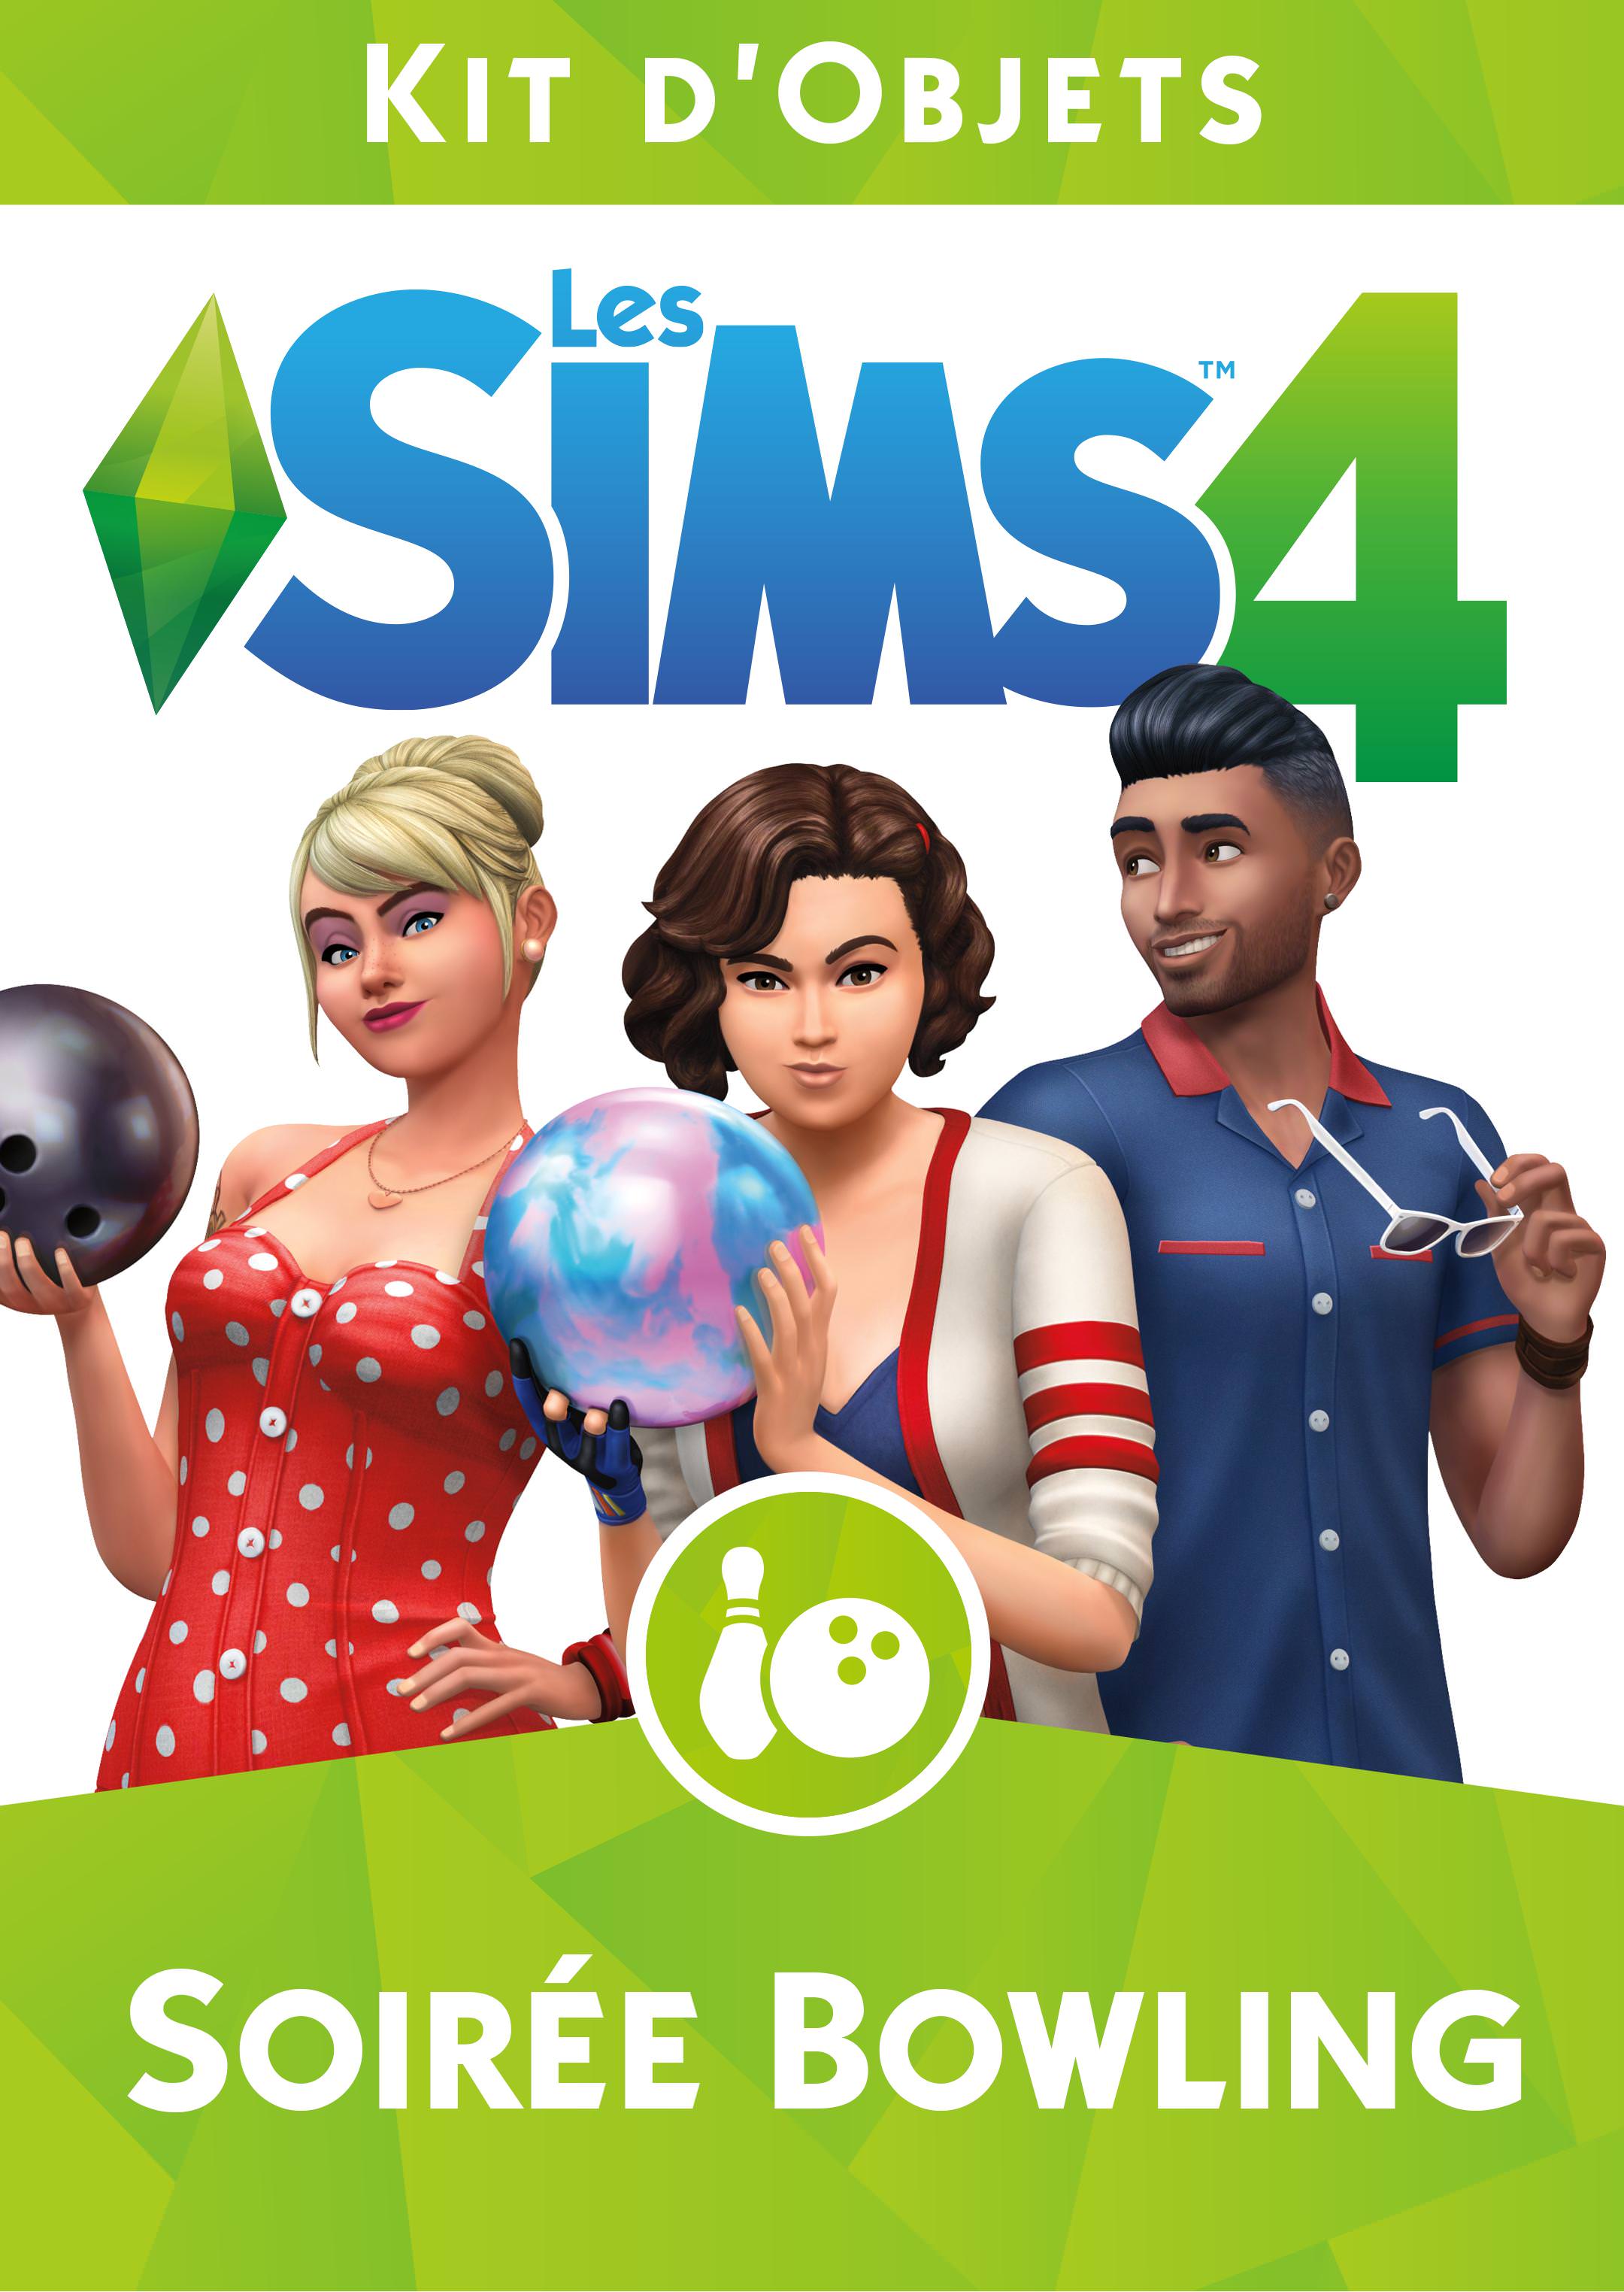 jaquette du jeu vidéo Les Sims 4 : Kit d'Objets Soirée Bowling